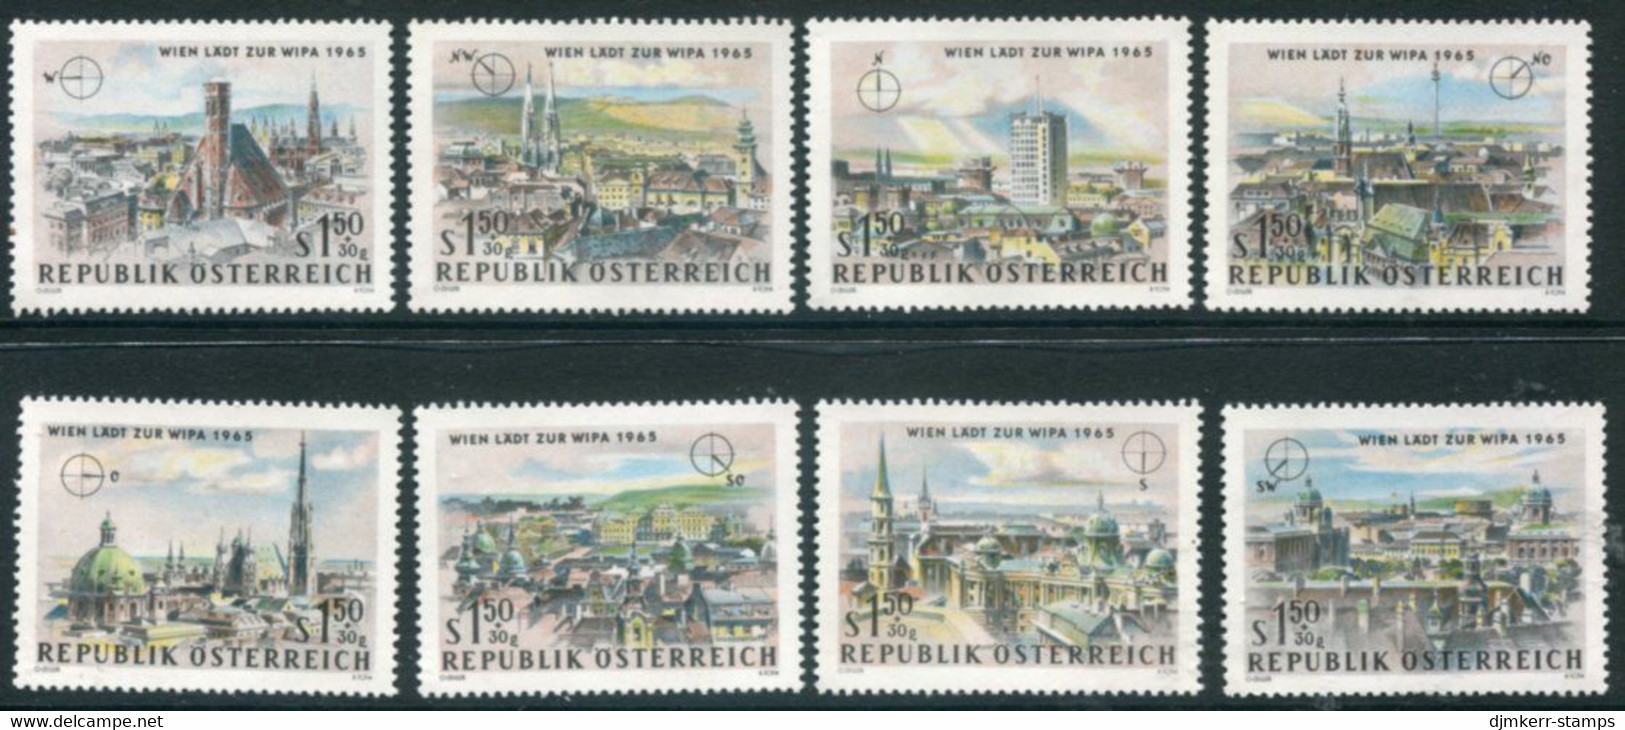 AUSTRIA 1964 WIPA Philatelic Exhibition I MNH / **.  Michel 1164-71 - Nuovi